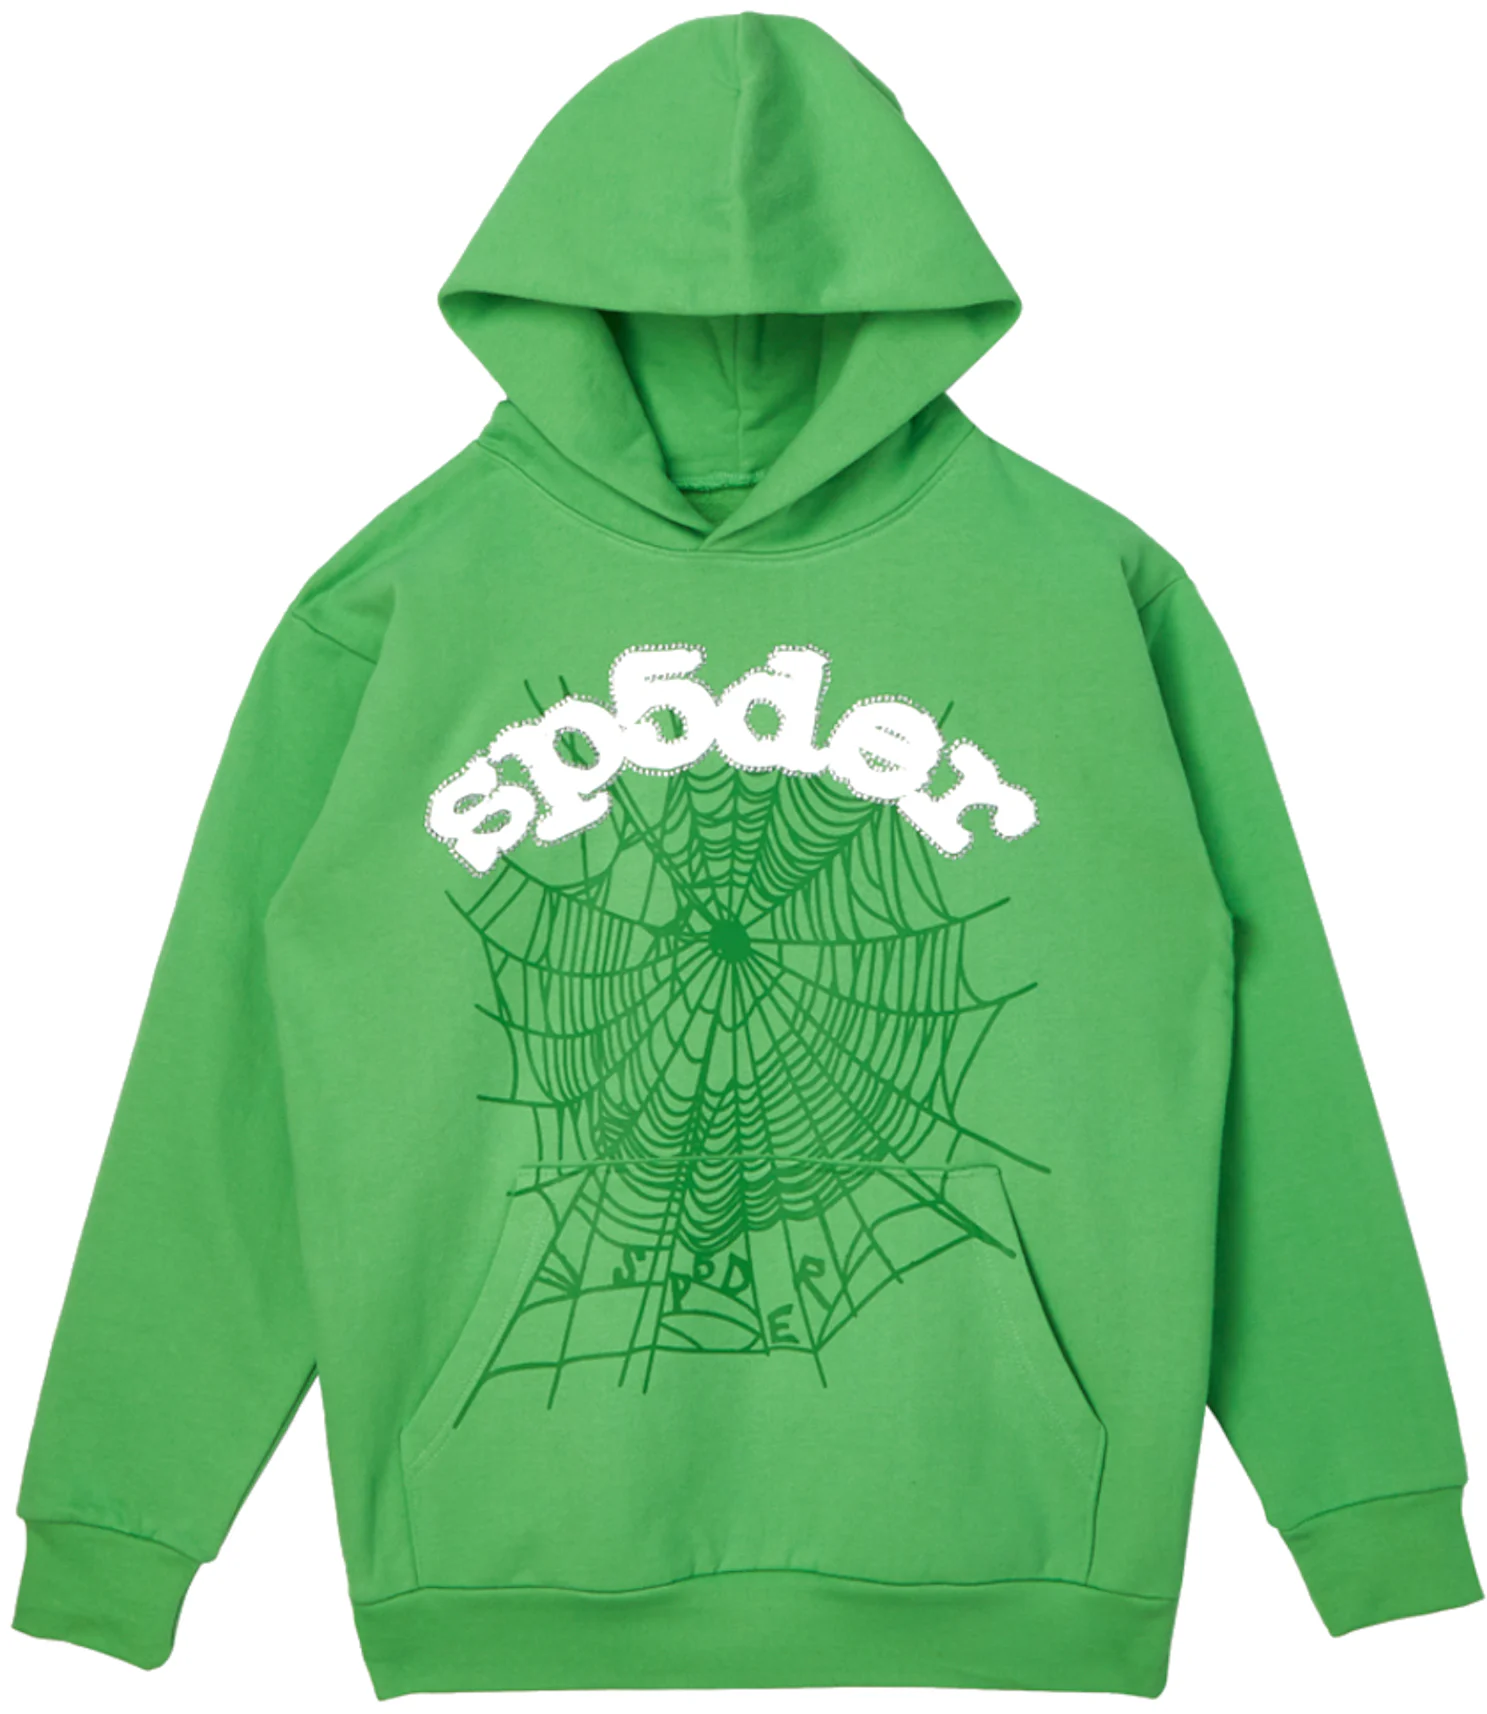 Sp5der Websuit Hoodie Green Men's - SS21 - US